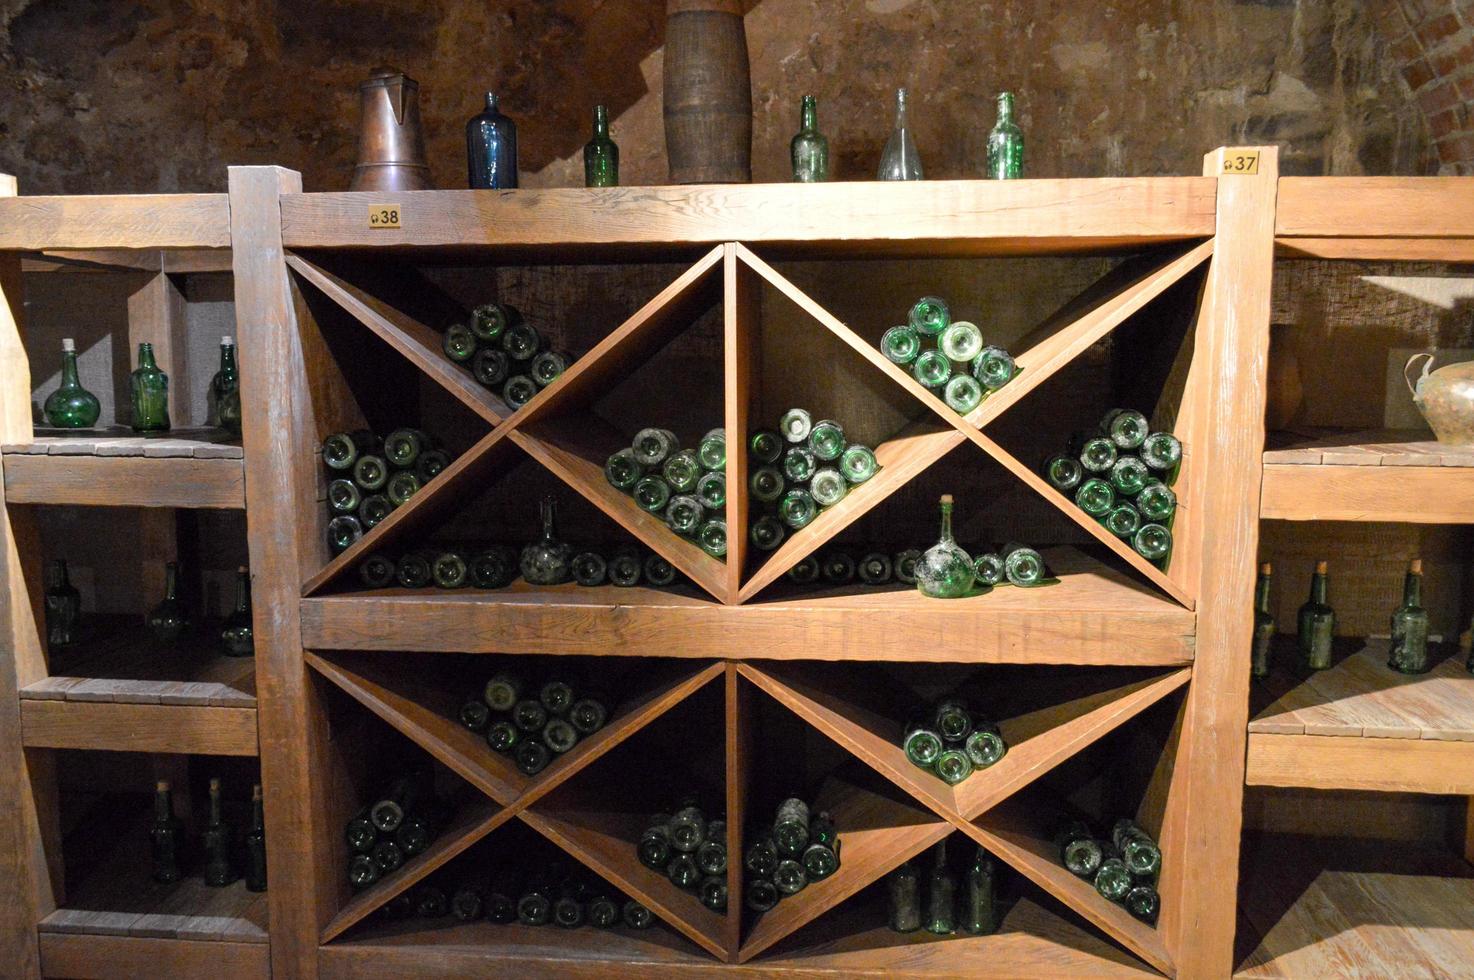 botellas de vino y cerveza vacías de color verde vintage en un armario de vinos con estantes en una antigua bodega de piedra de ladrillo medieval foto